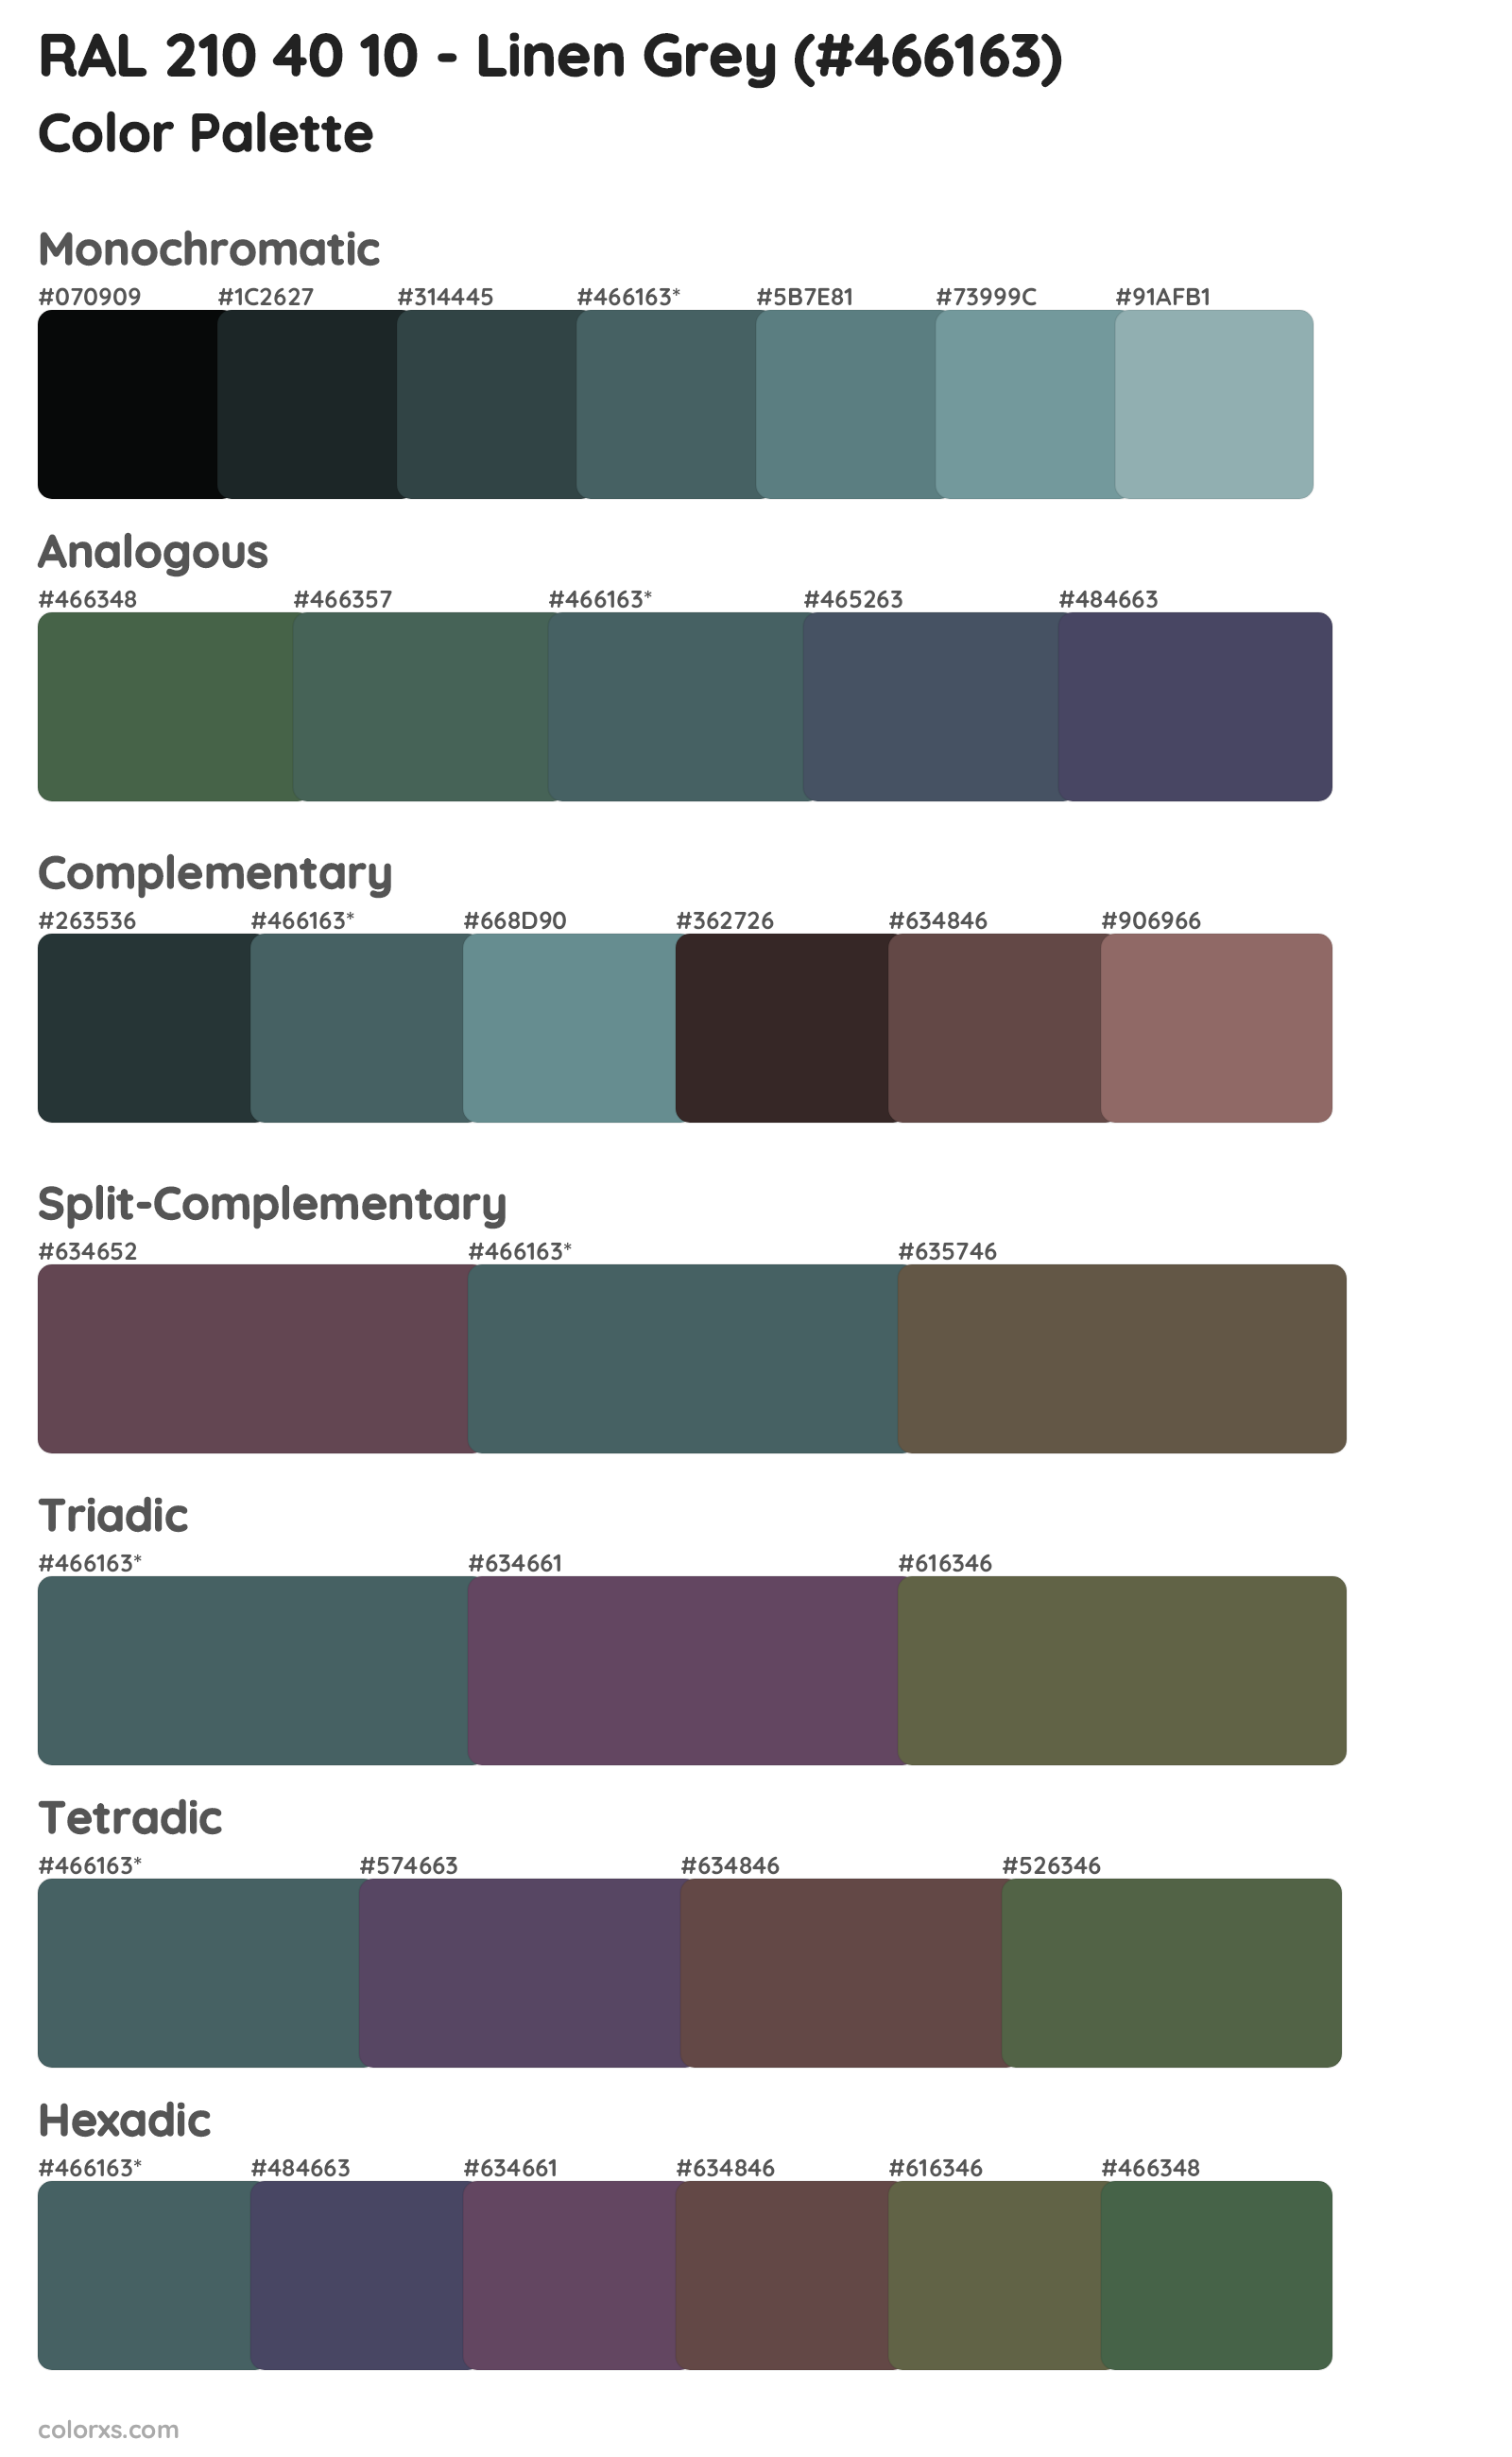 RAL 210 40 10 - Linen Grey Color Scheme Palettes